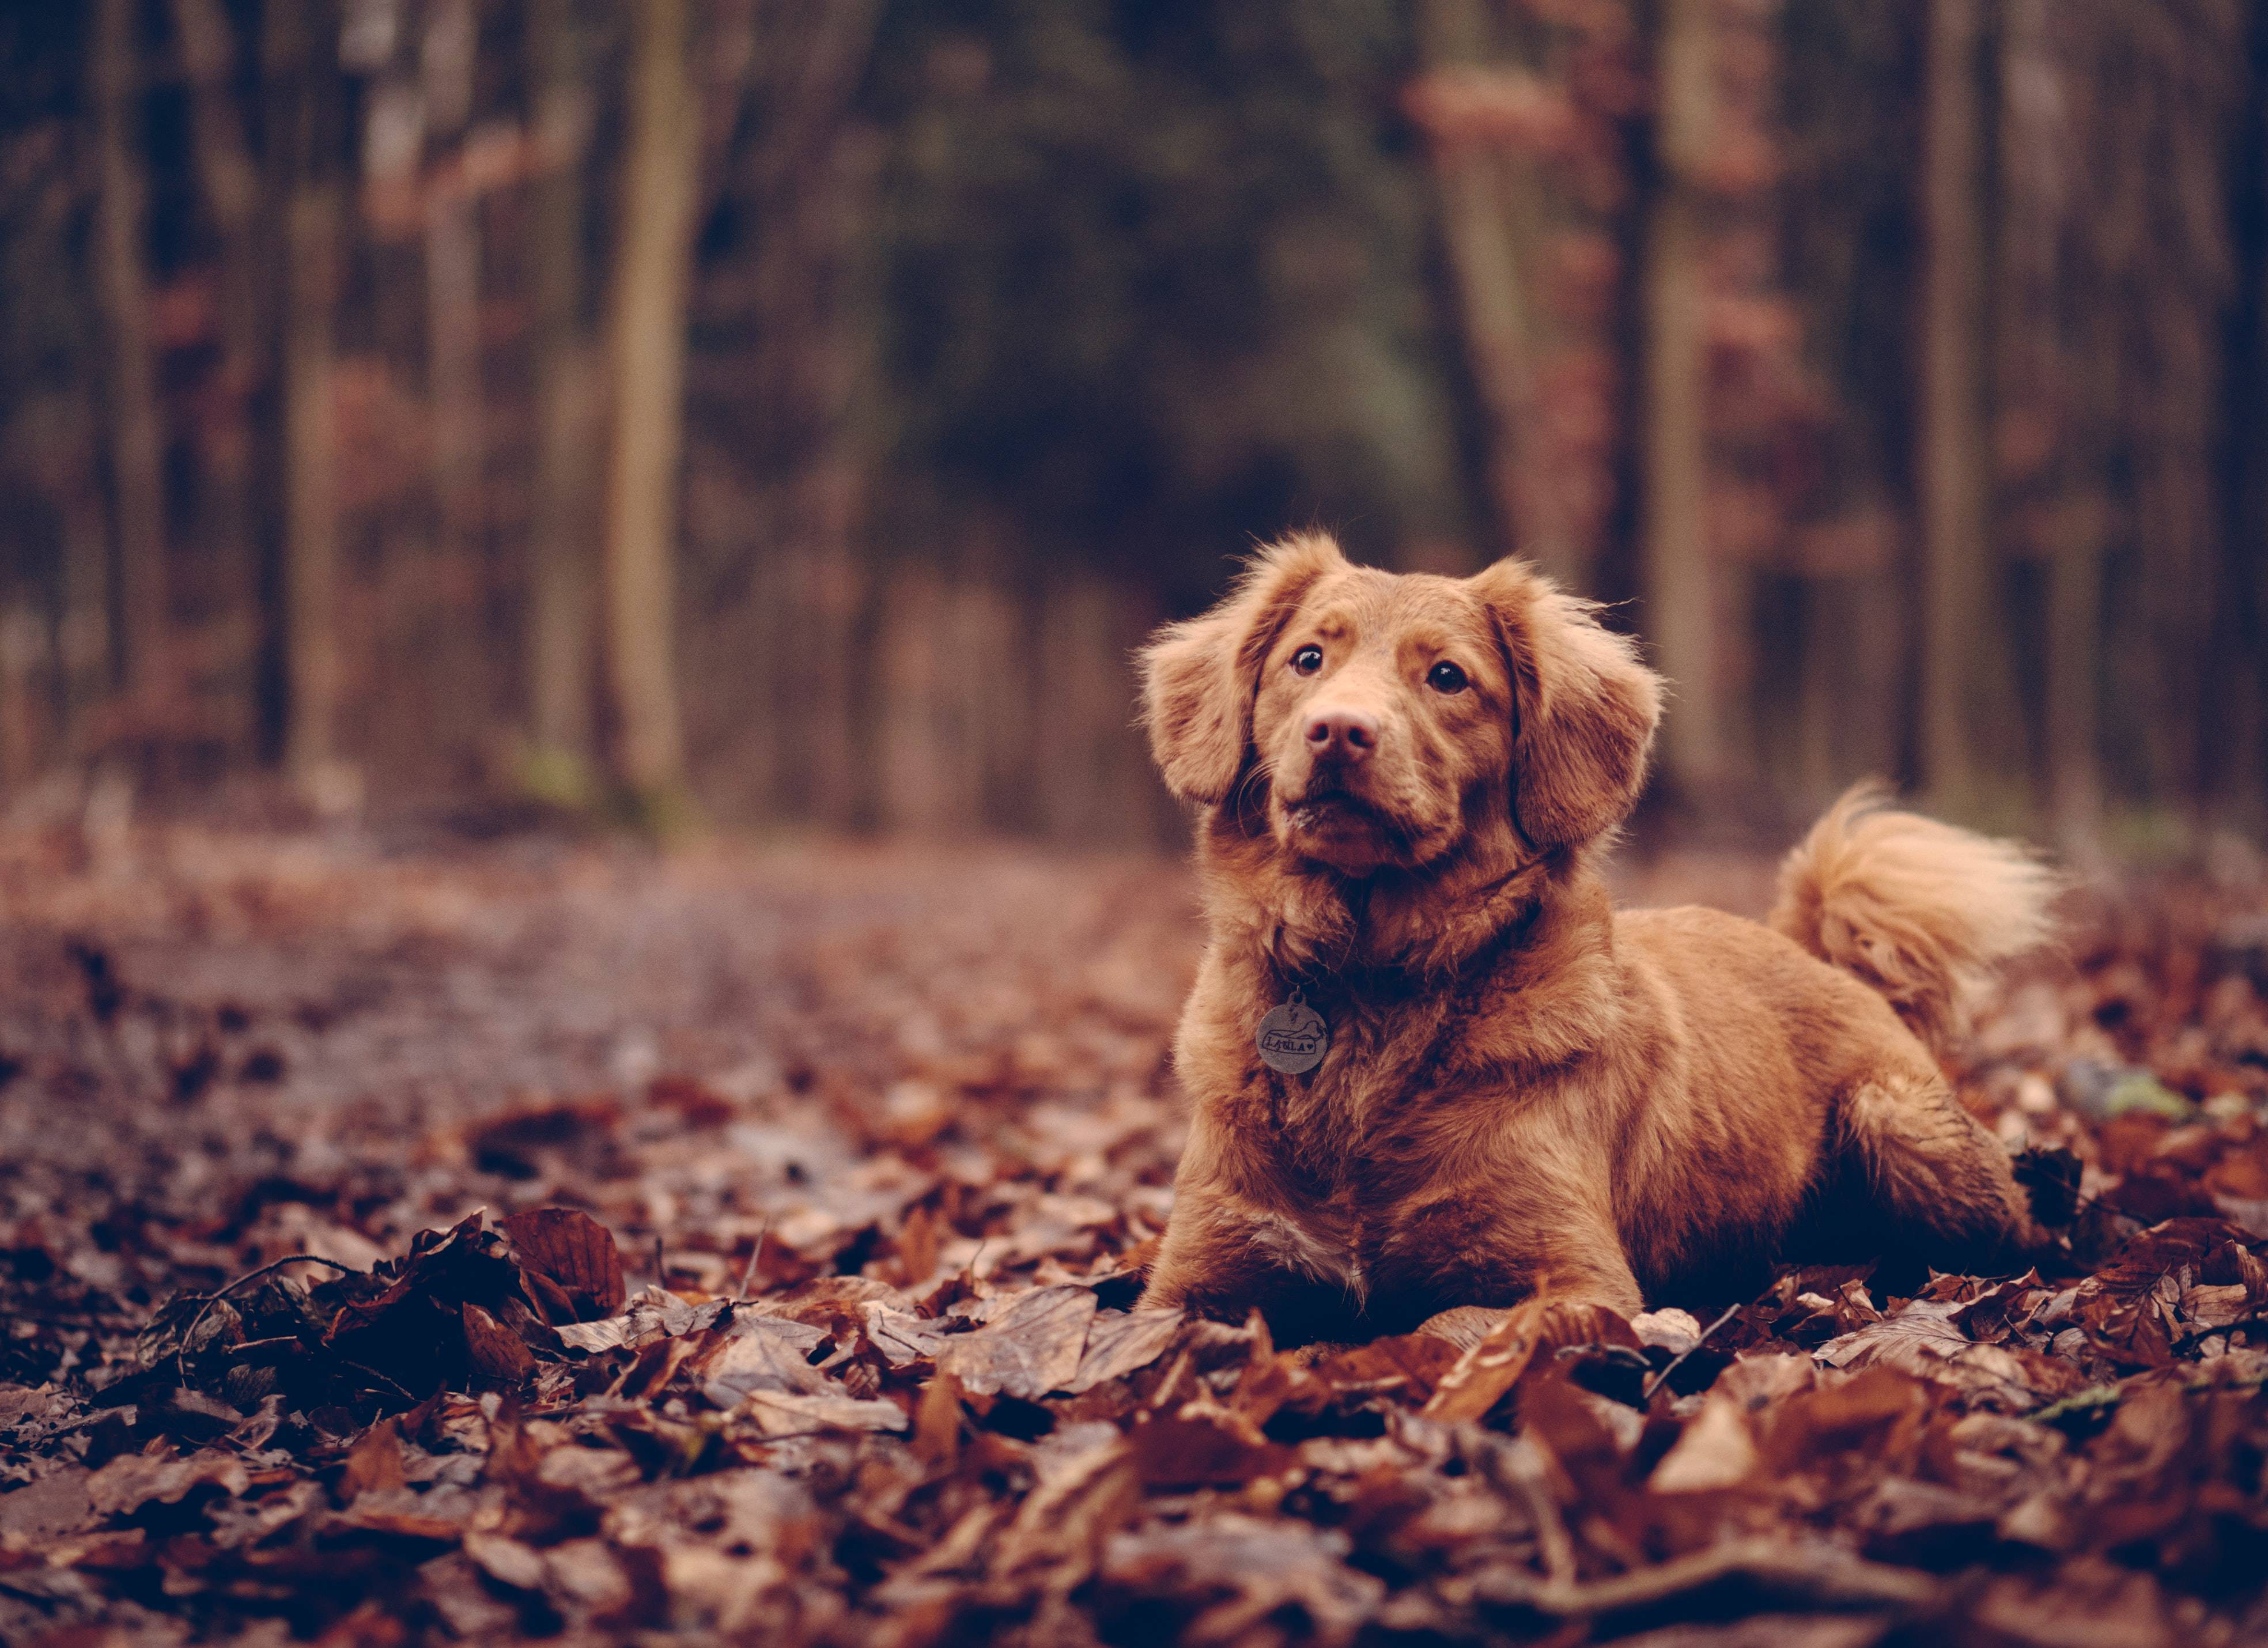 Heb jij al een nieuwe <br>herfst-outfit voor je hond?